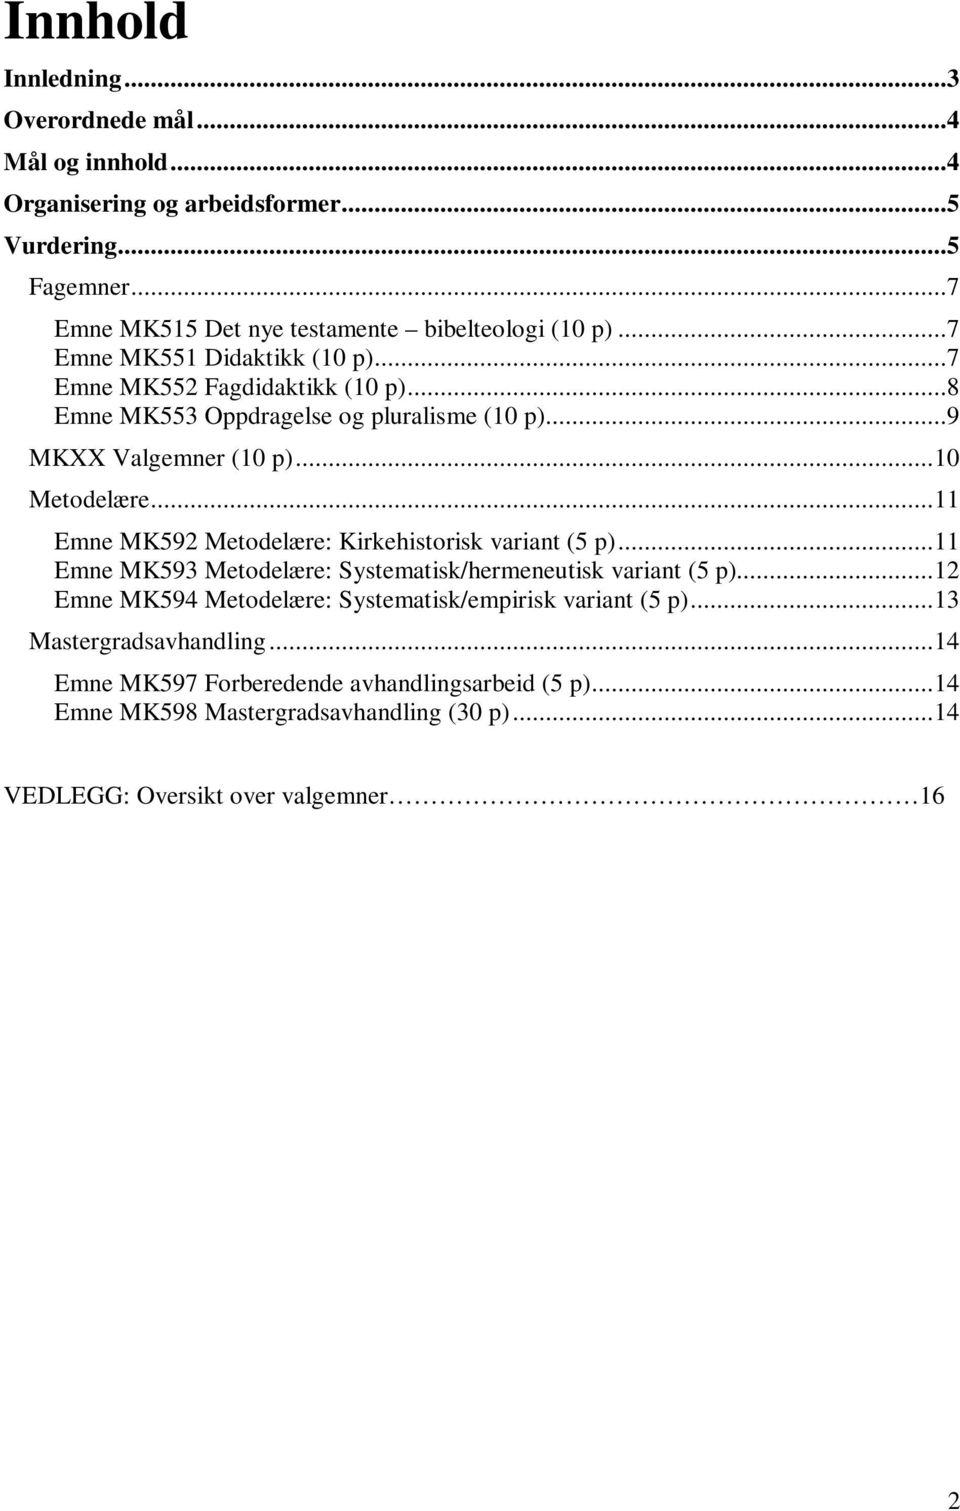 .. 11 Emne MK592 Metodelære: Kirkehistorisk variant (5 p)... 11 Emne MK593 Metodelære: Systematisk/hermeneutisk variant (5 p).